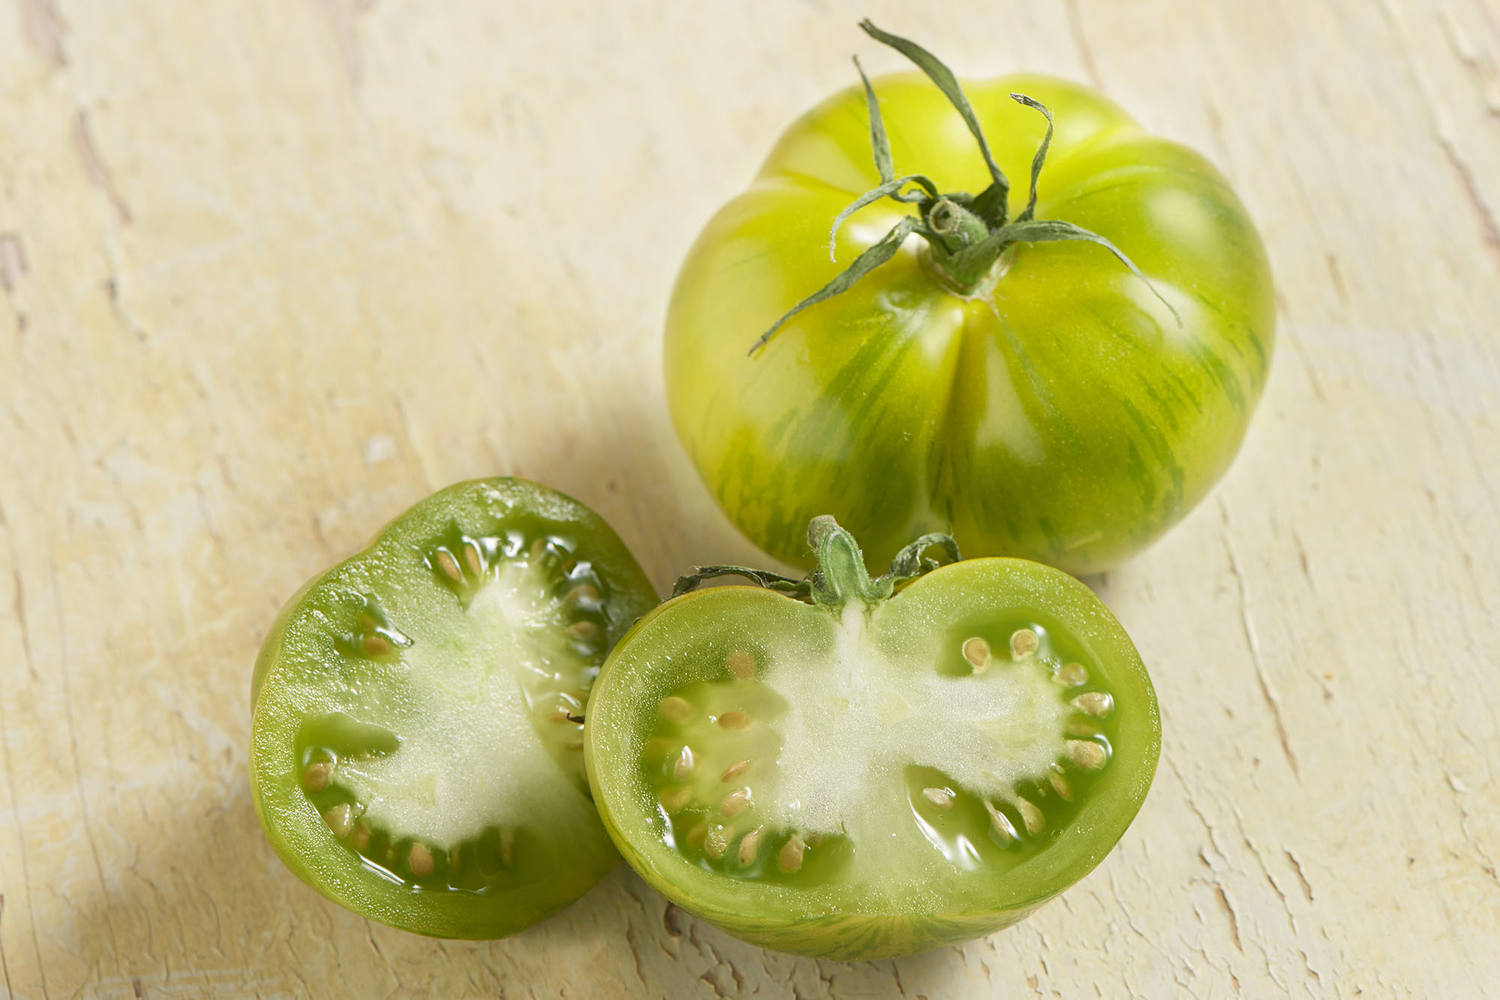 Tijger tomaten groen verpakt 500gr kist 6 stuks 2